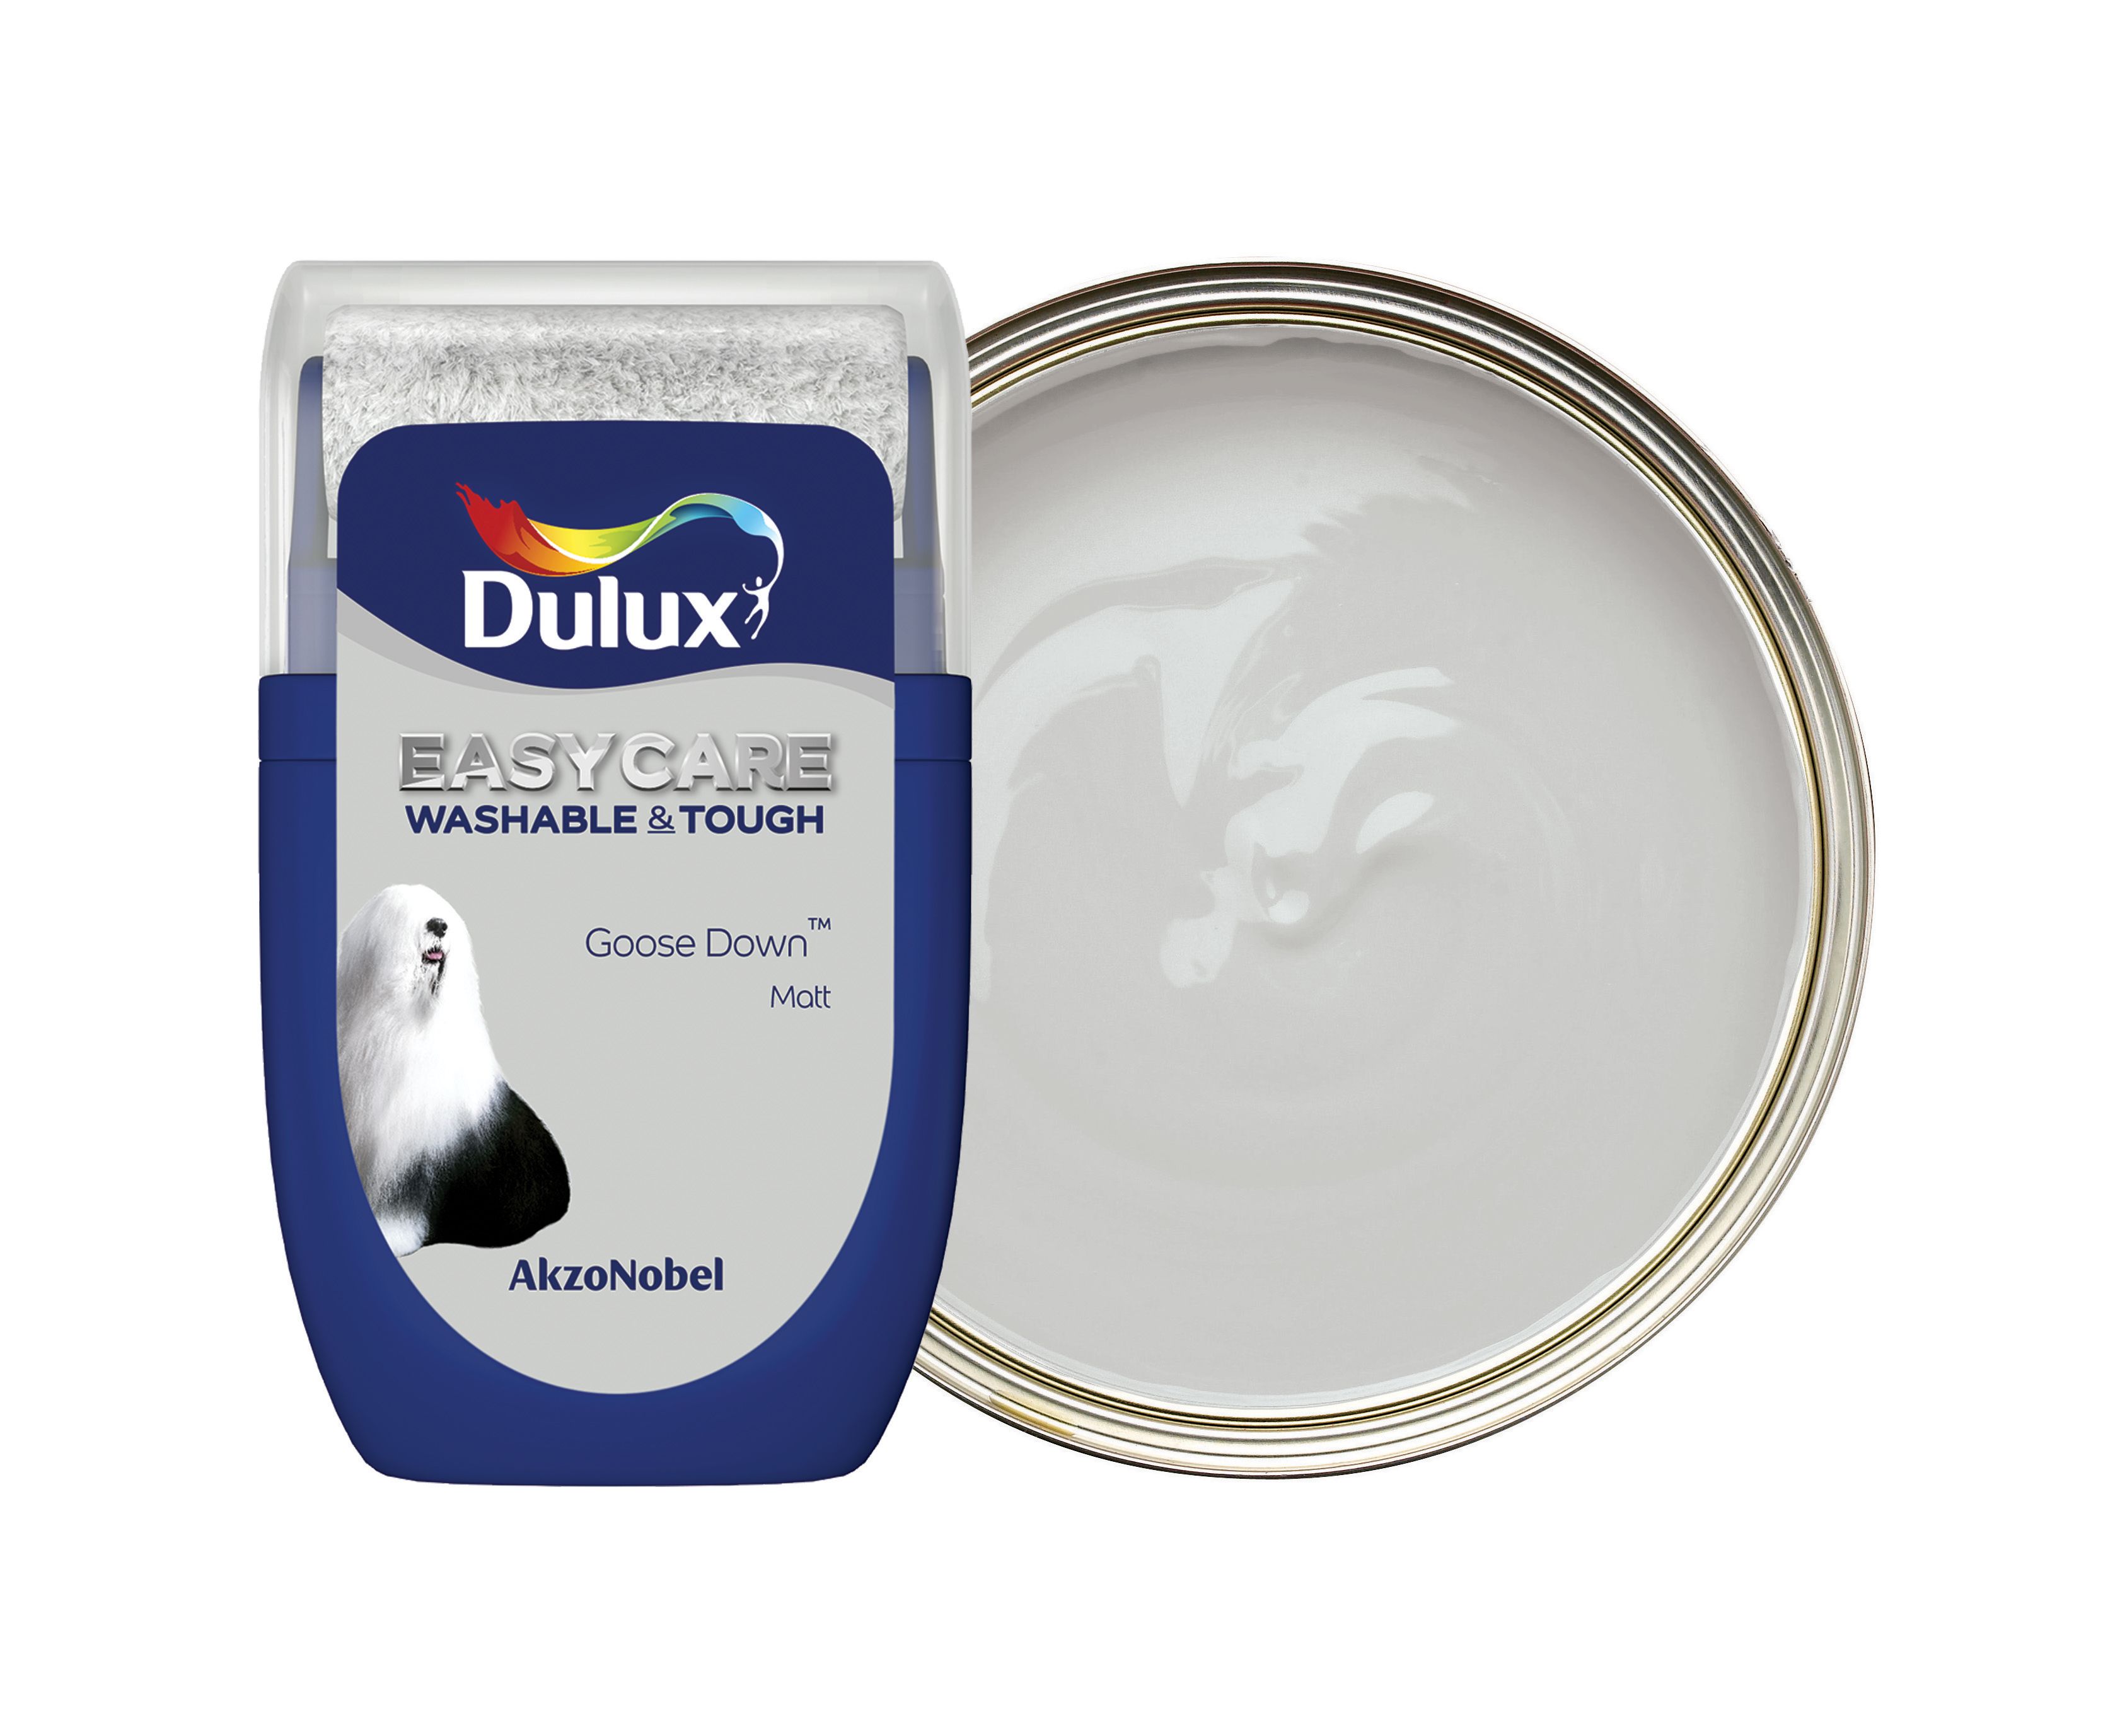 Dulux Easycare Washable & Tough Paint Tester Pot - Goose Down - 30ml